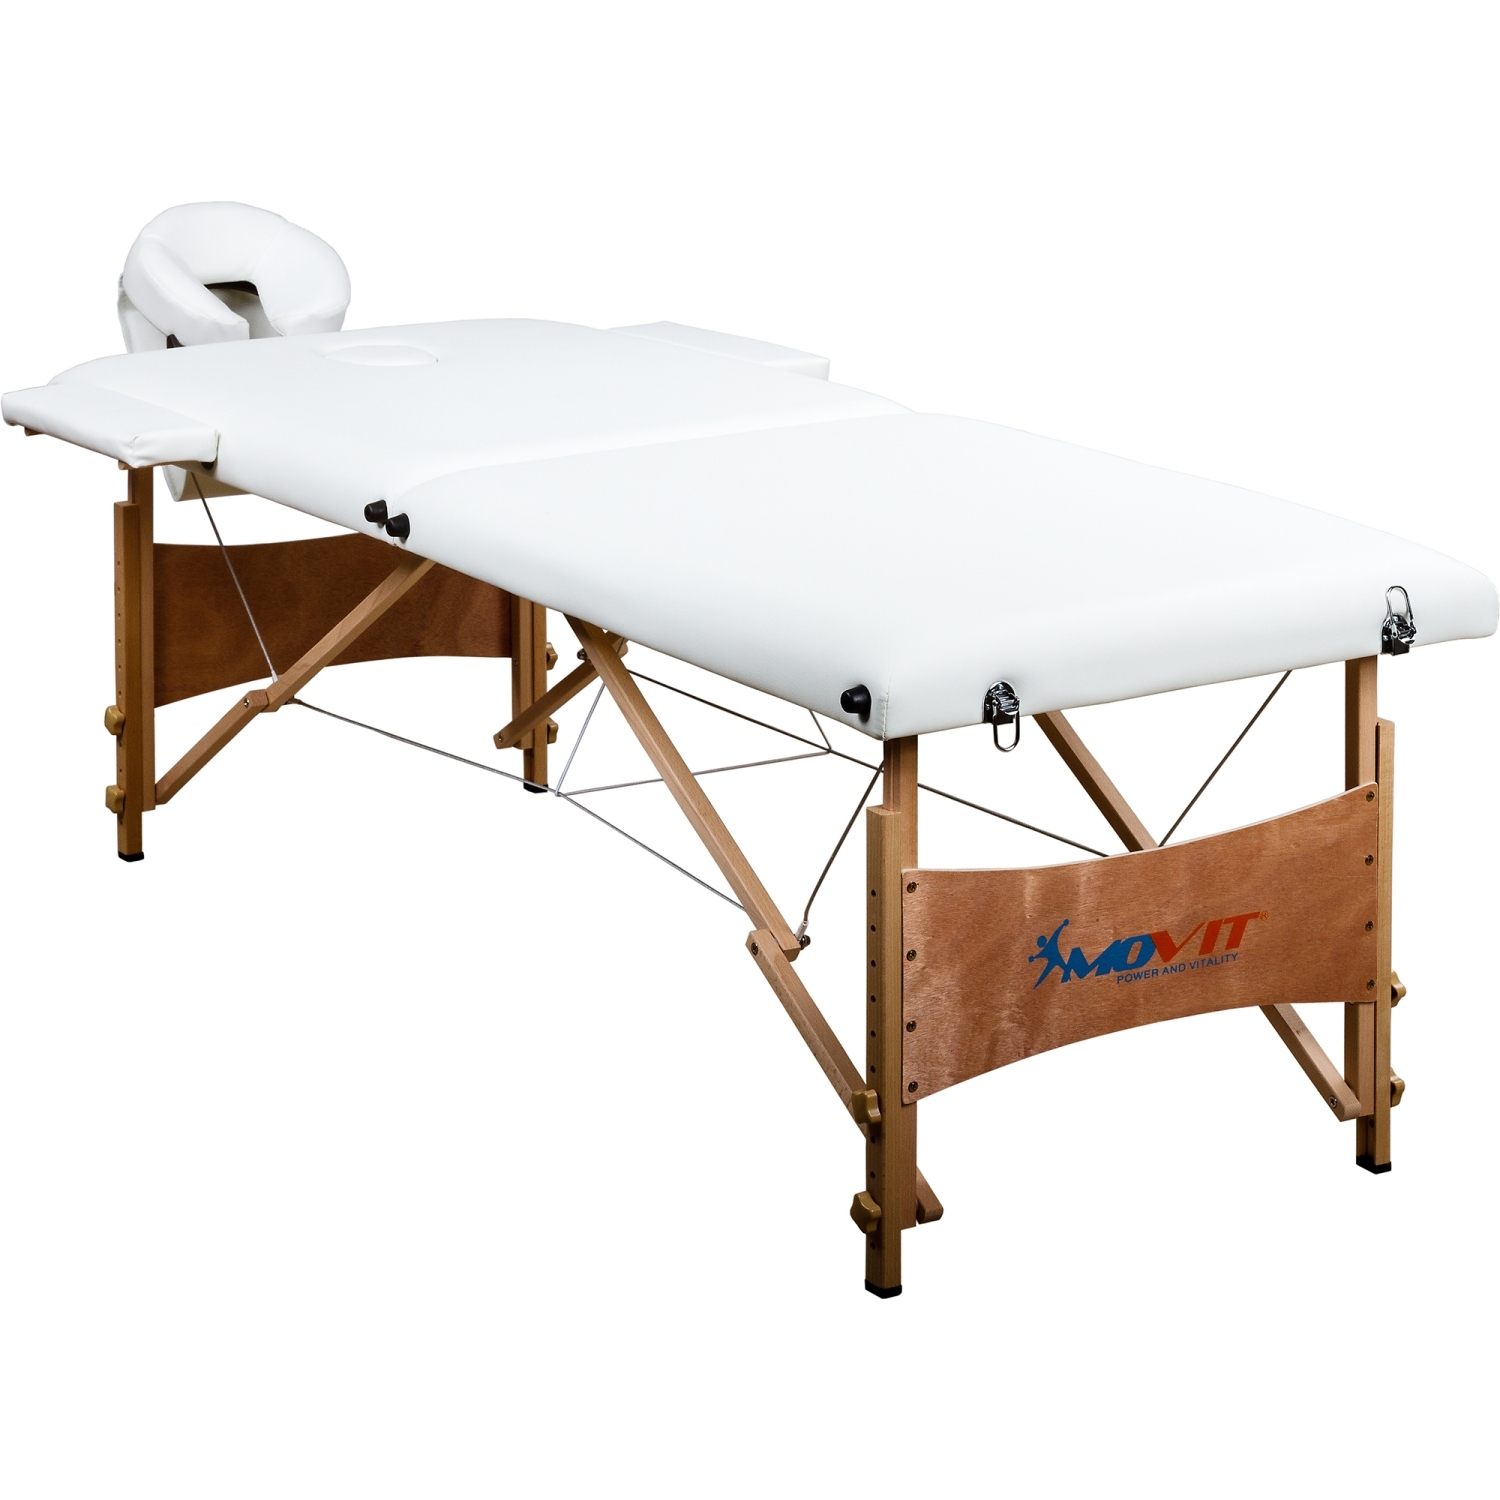 Behandeltafel – Massagetafel – Fysiotherapie – Verstelbaar – Inclusief draagtas – 210 x 92 x 70 cm – Wit